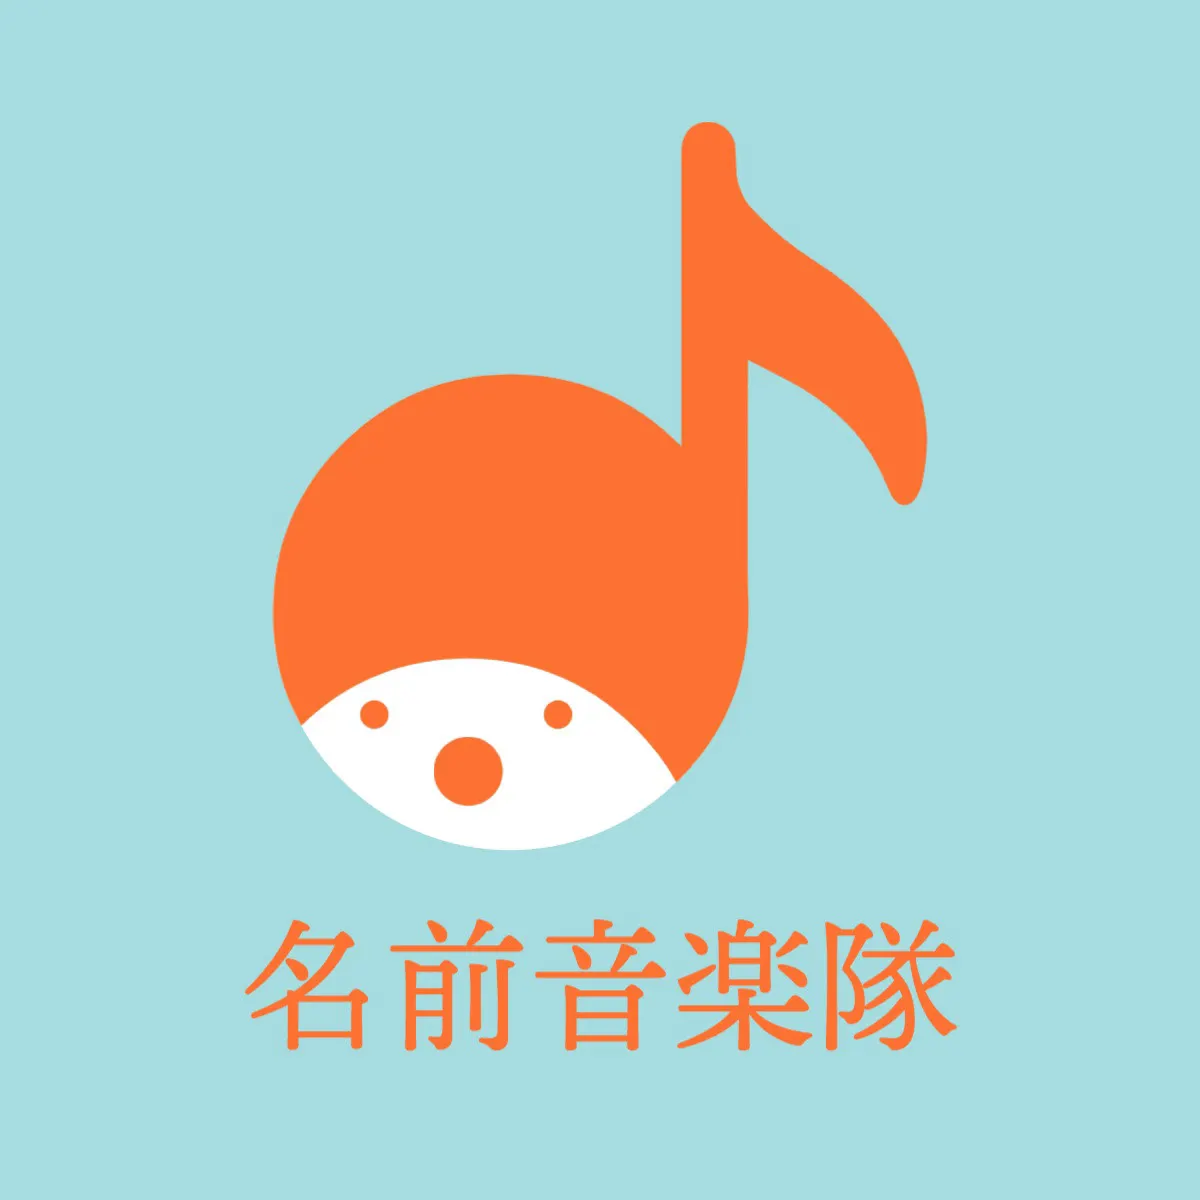 blue back orange Music corps band logo